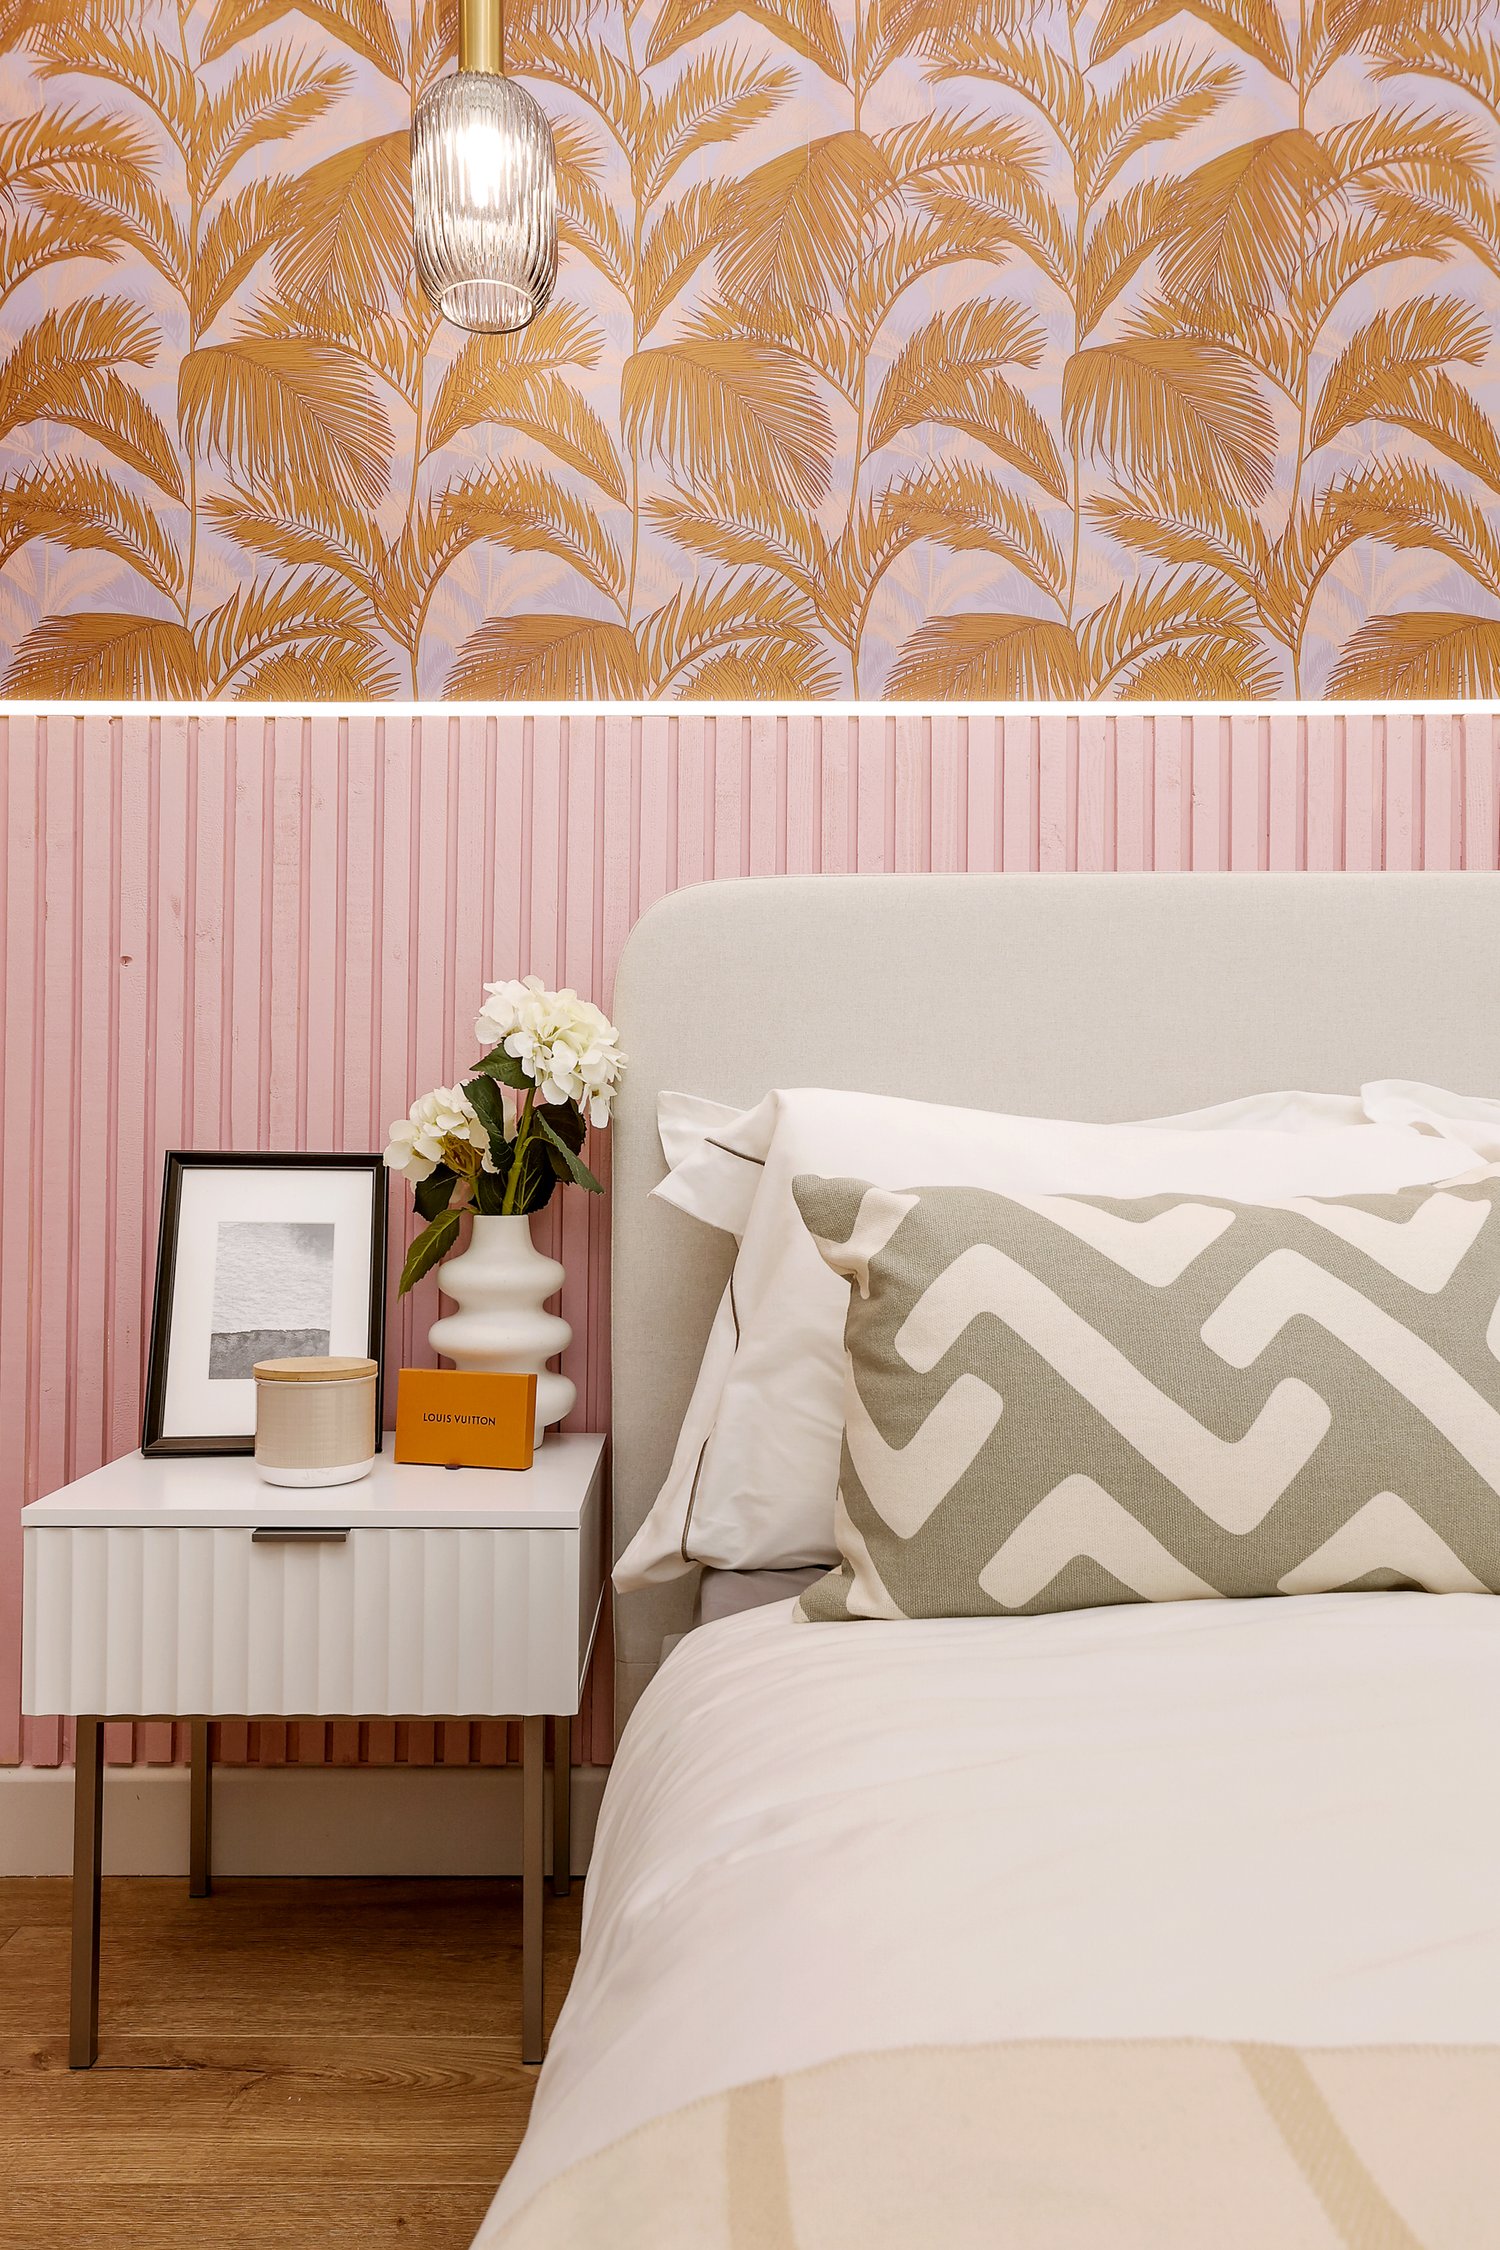 louis vuitton wallpaper for bedroom